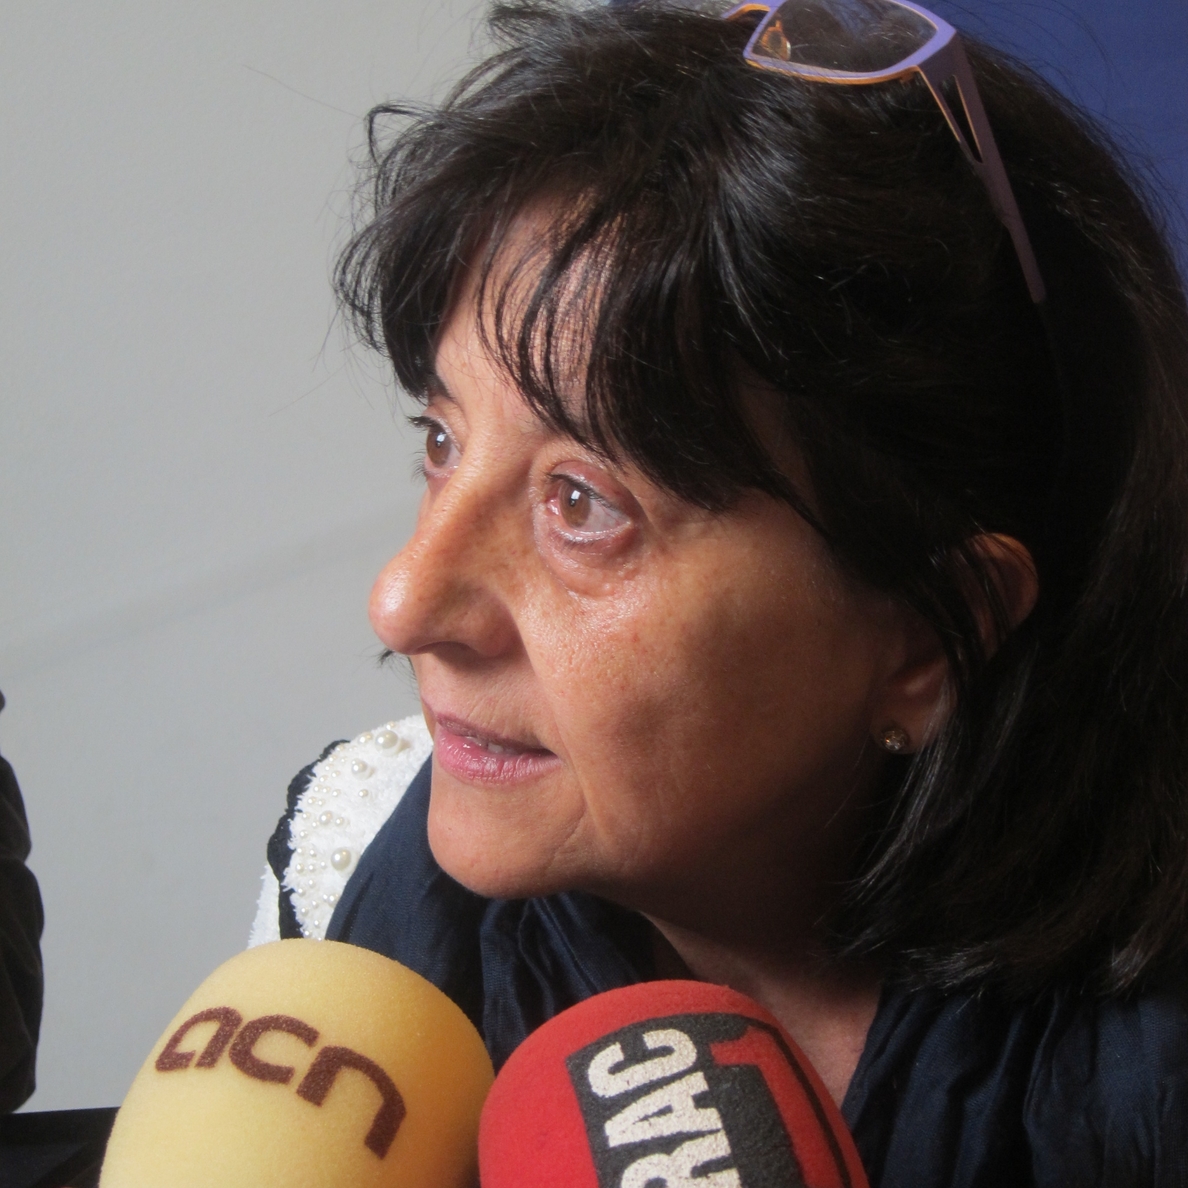 La cónsul de Andorra la Vella expresa su apoyo al derecho a decidir